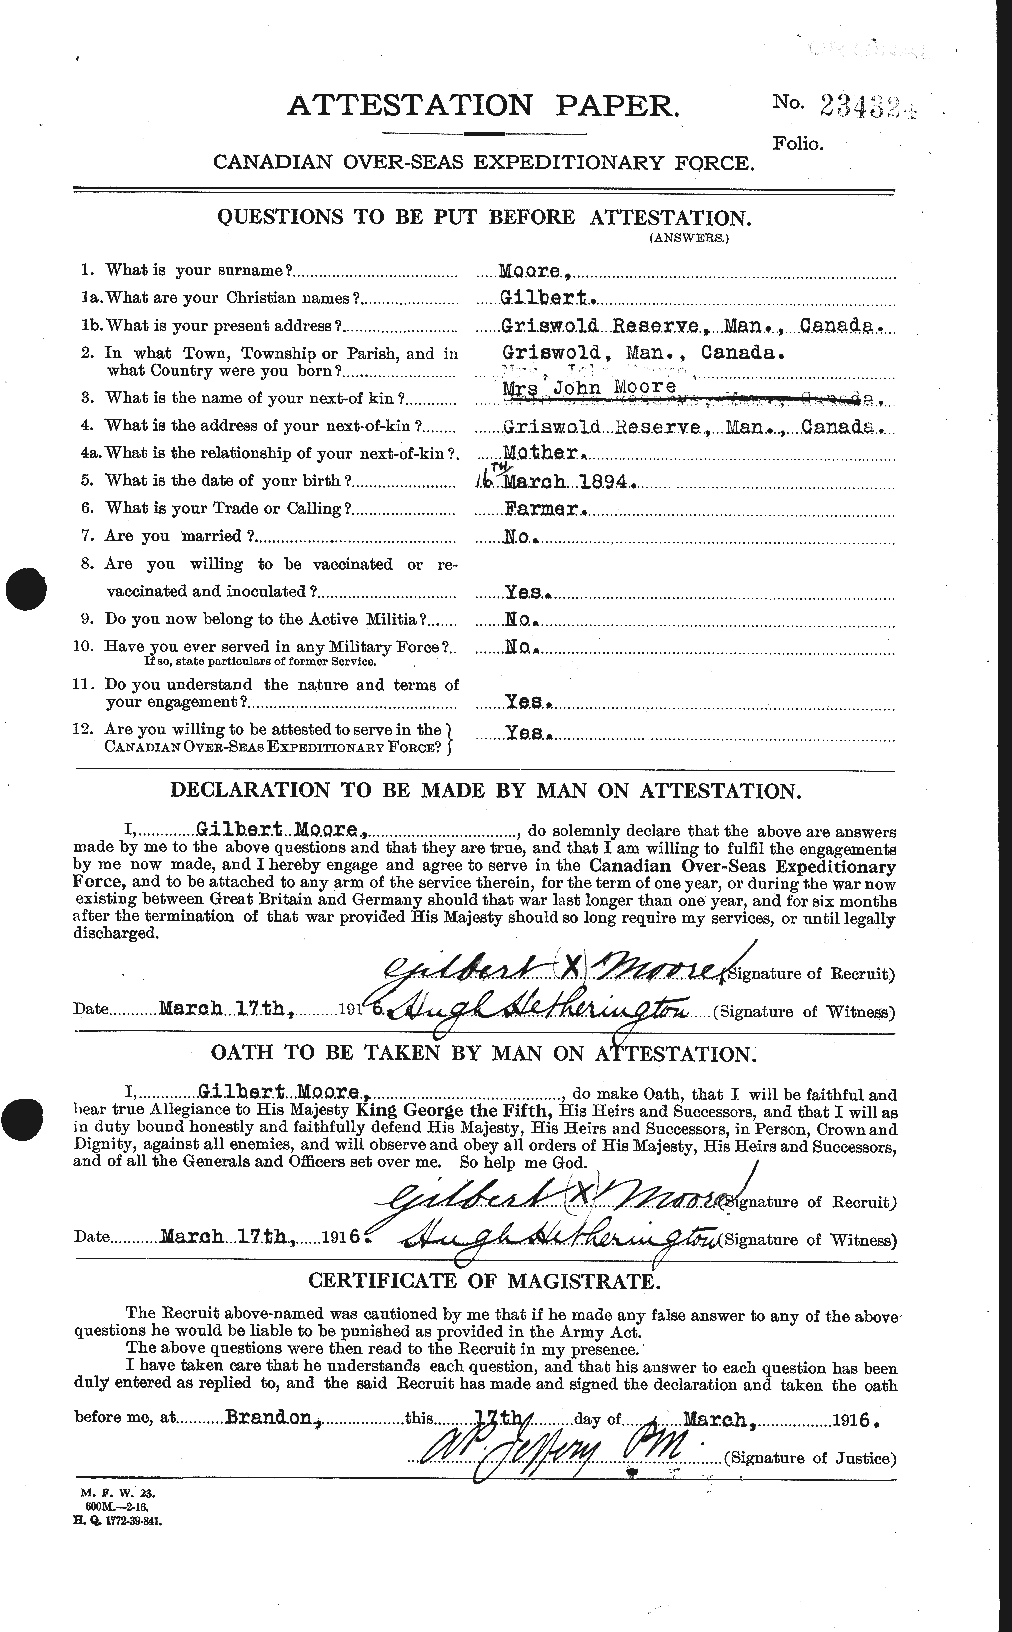 Dossiers du Personnel de la Première Guerre mondiale - CEC 502037a